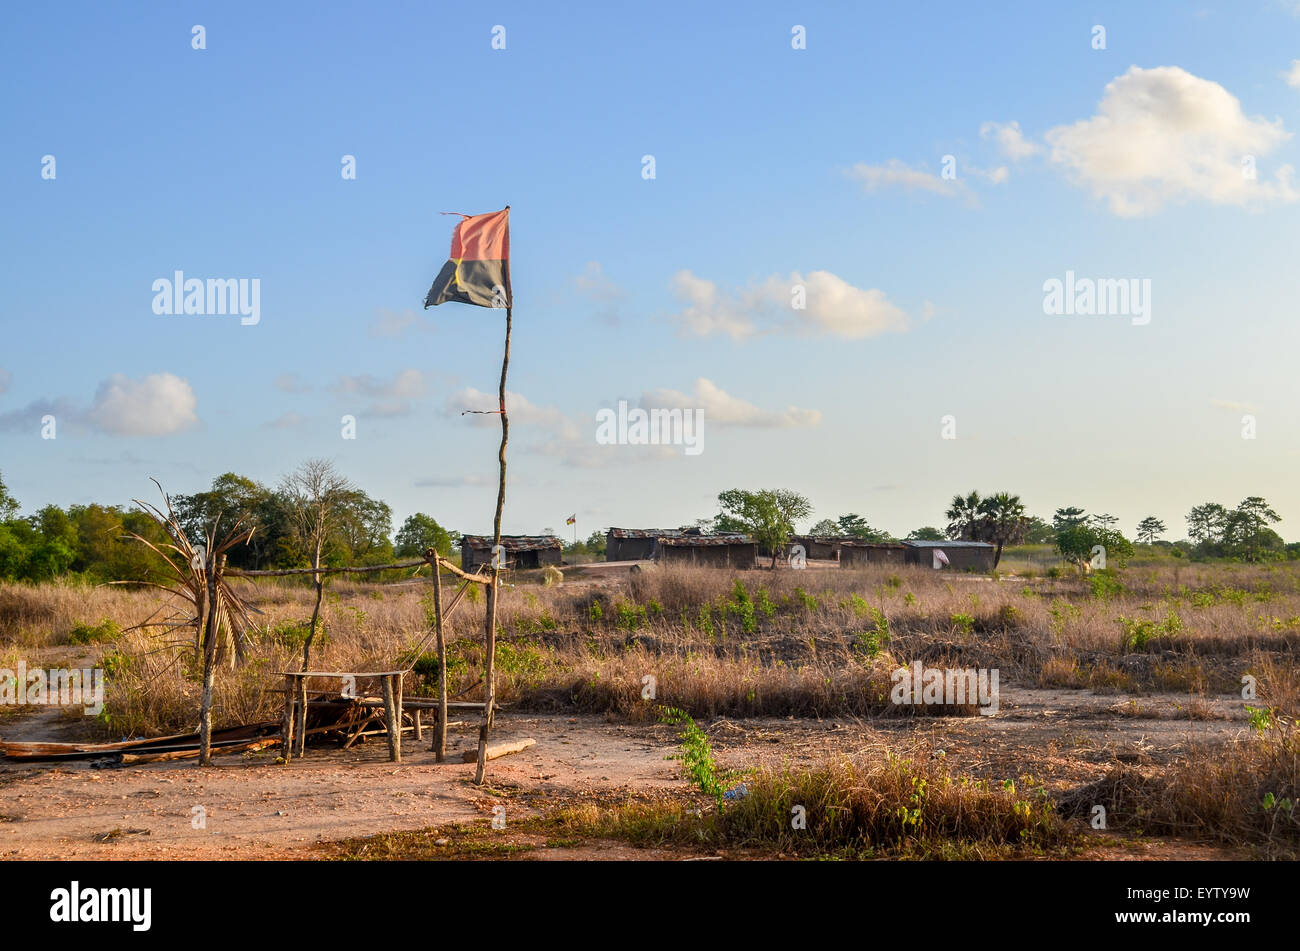 Pabellón de Angola en un palo de madera en el cielo azul de la campiña de Angola Foto de stock